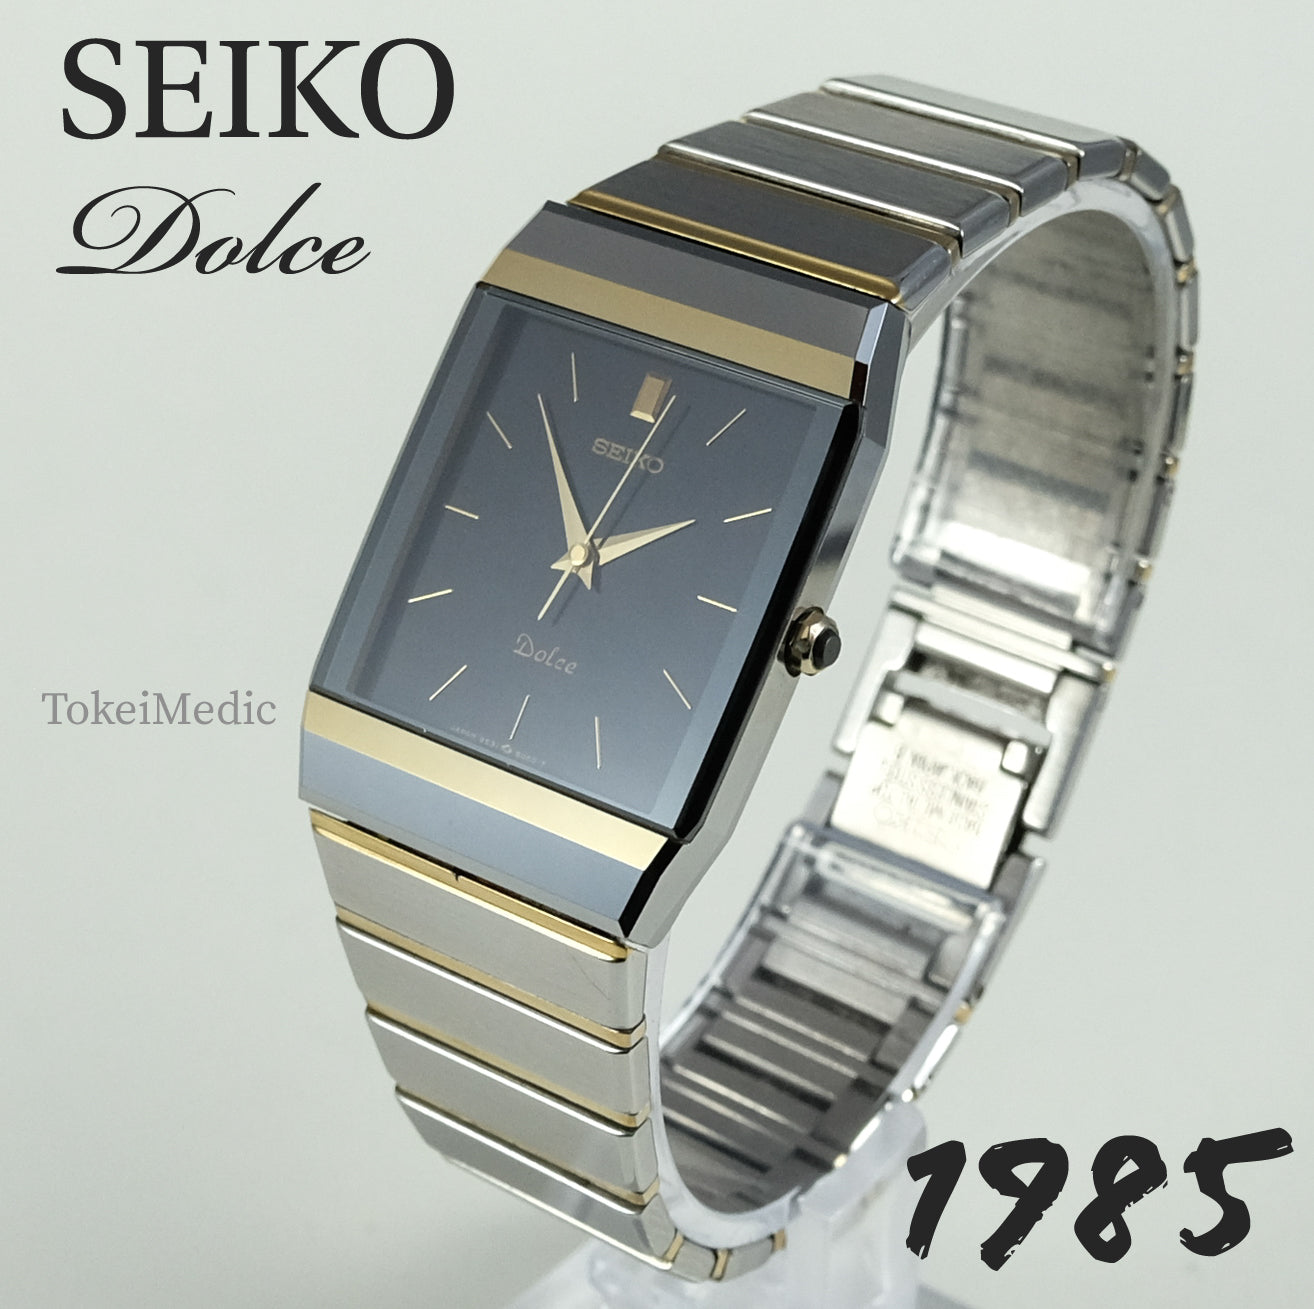 1985 Seiko Dolce 9531-5060